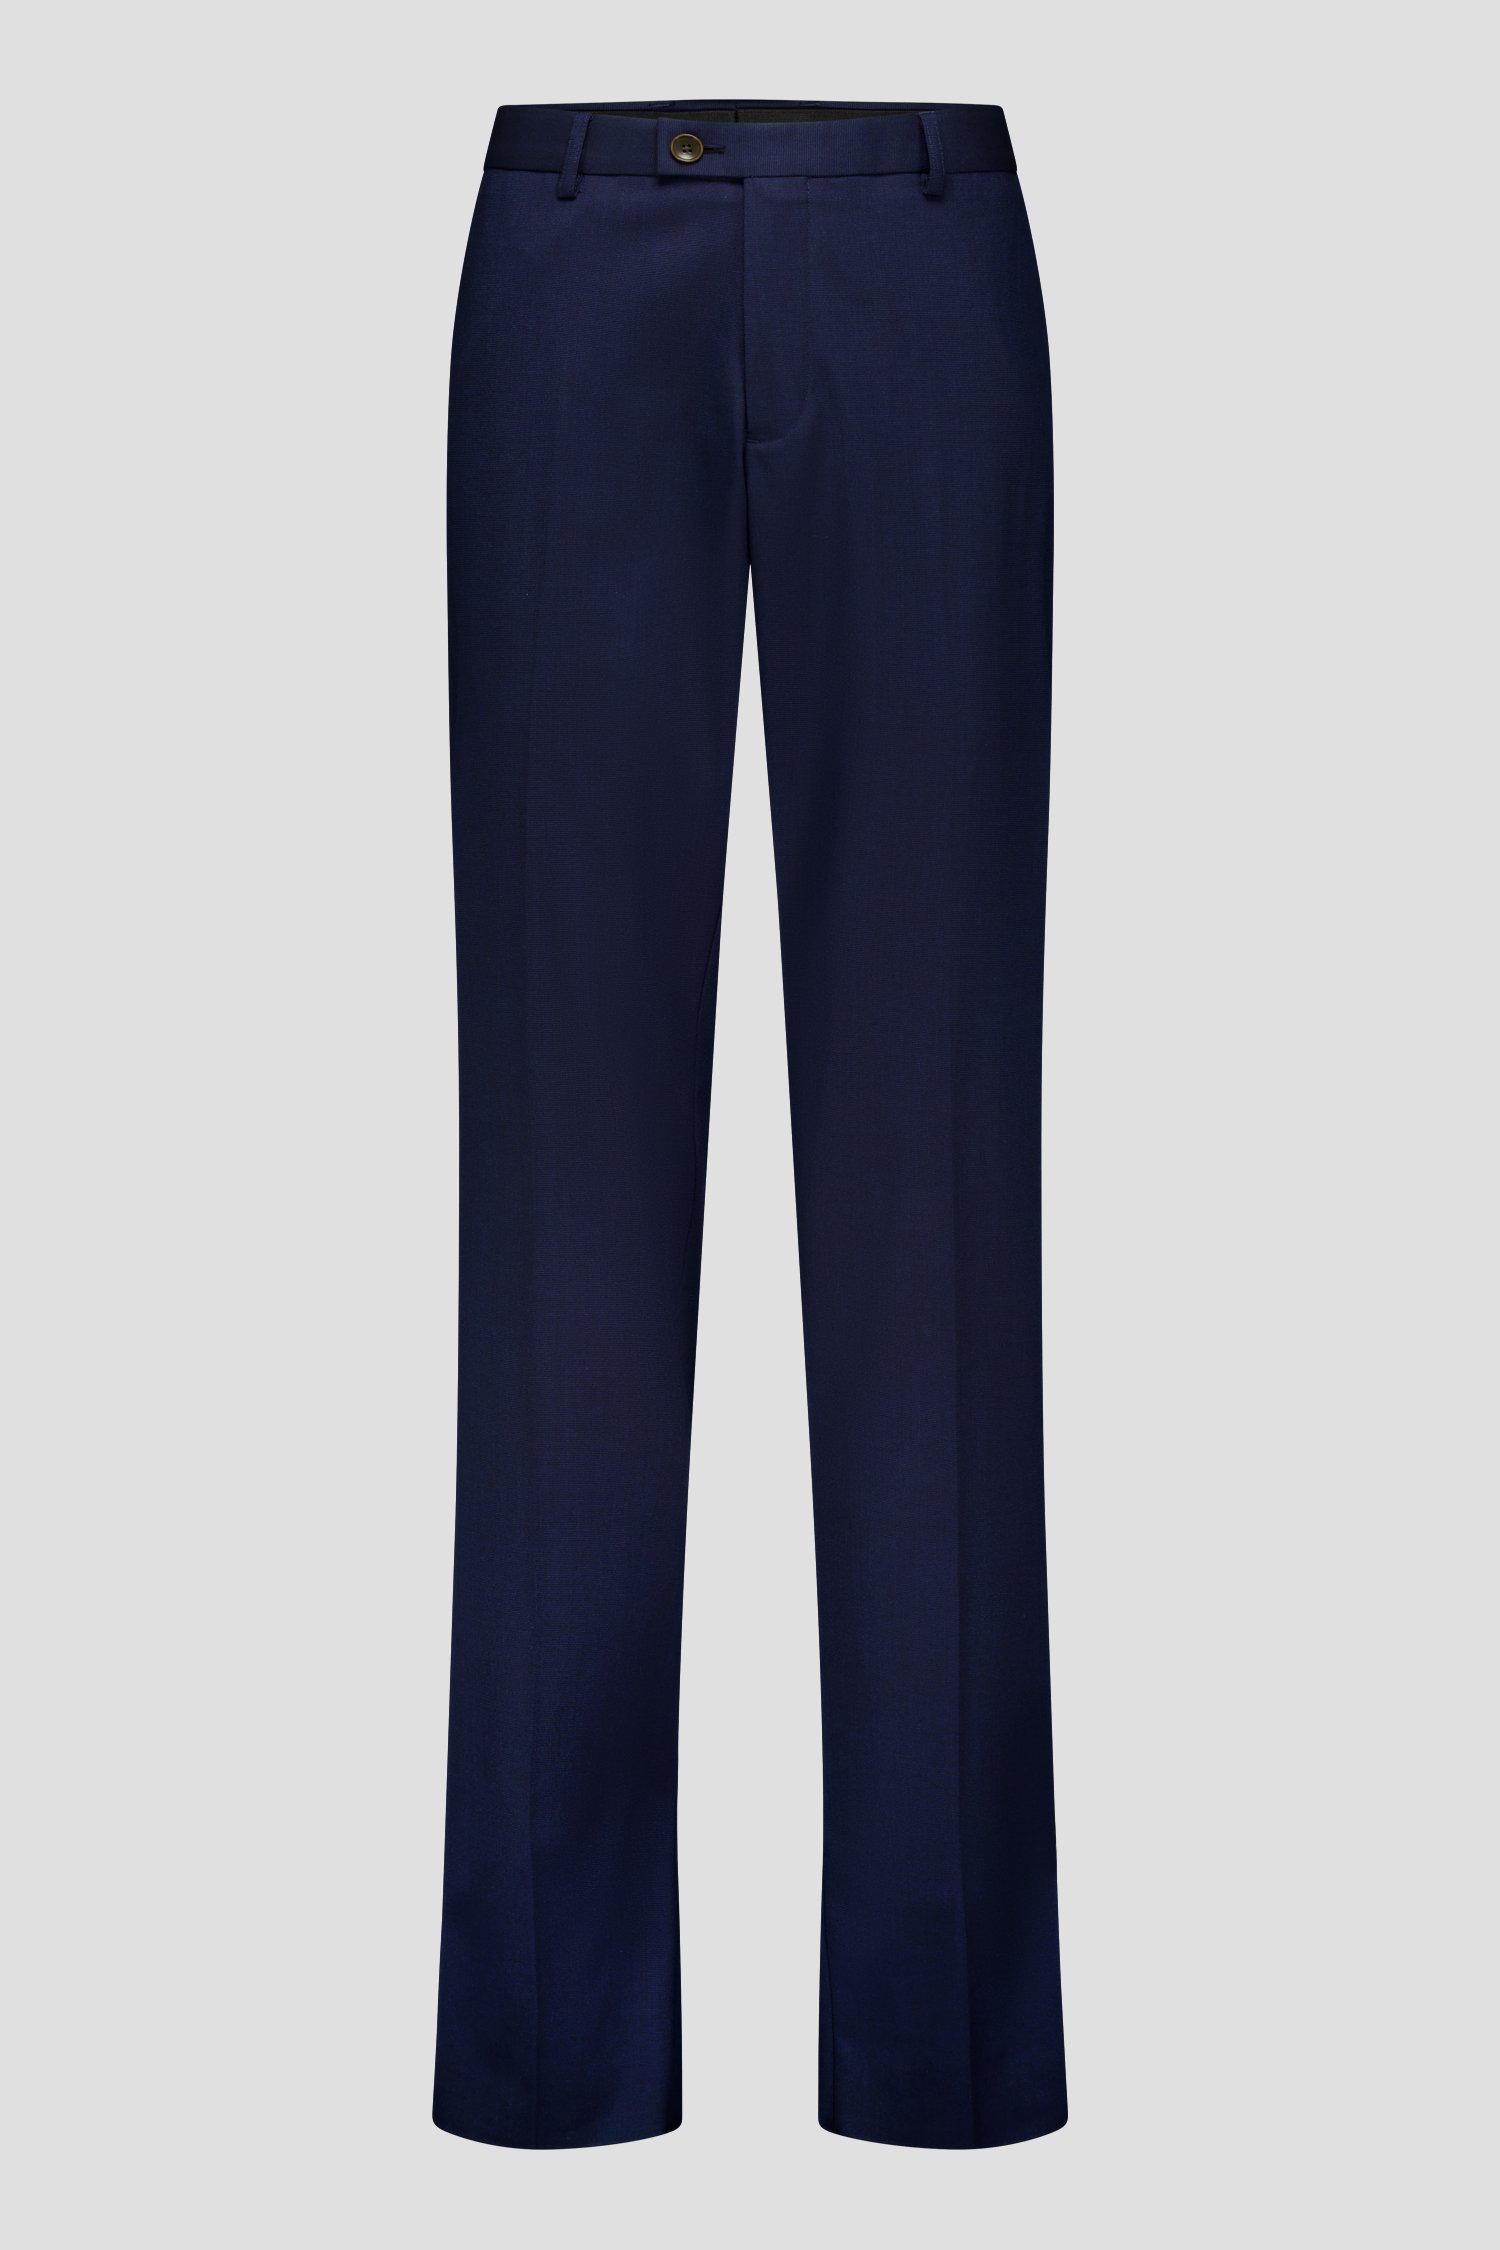 Pantalon de costume bleu - Craig - Comfort fit	 de Dansaert Black pour Hommes